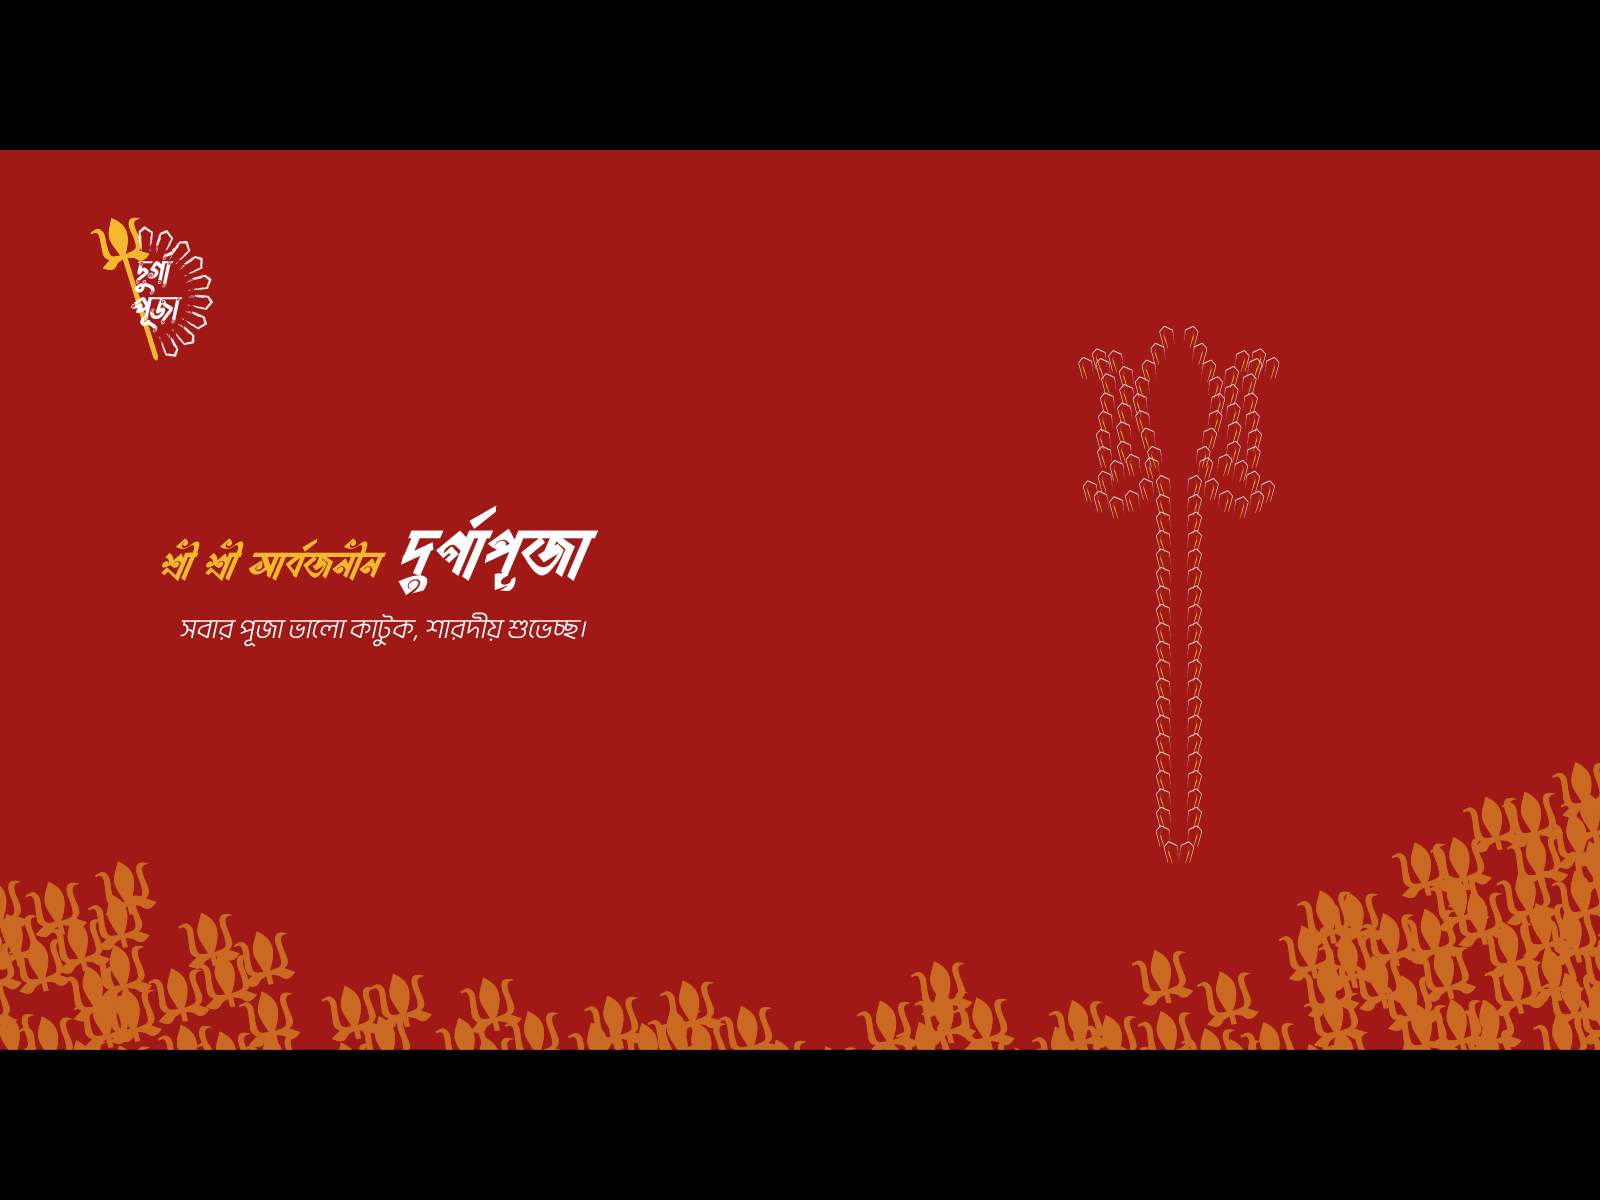 Sampoorna Durga Puja Kit for Navratri - Navratri pooja thali